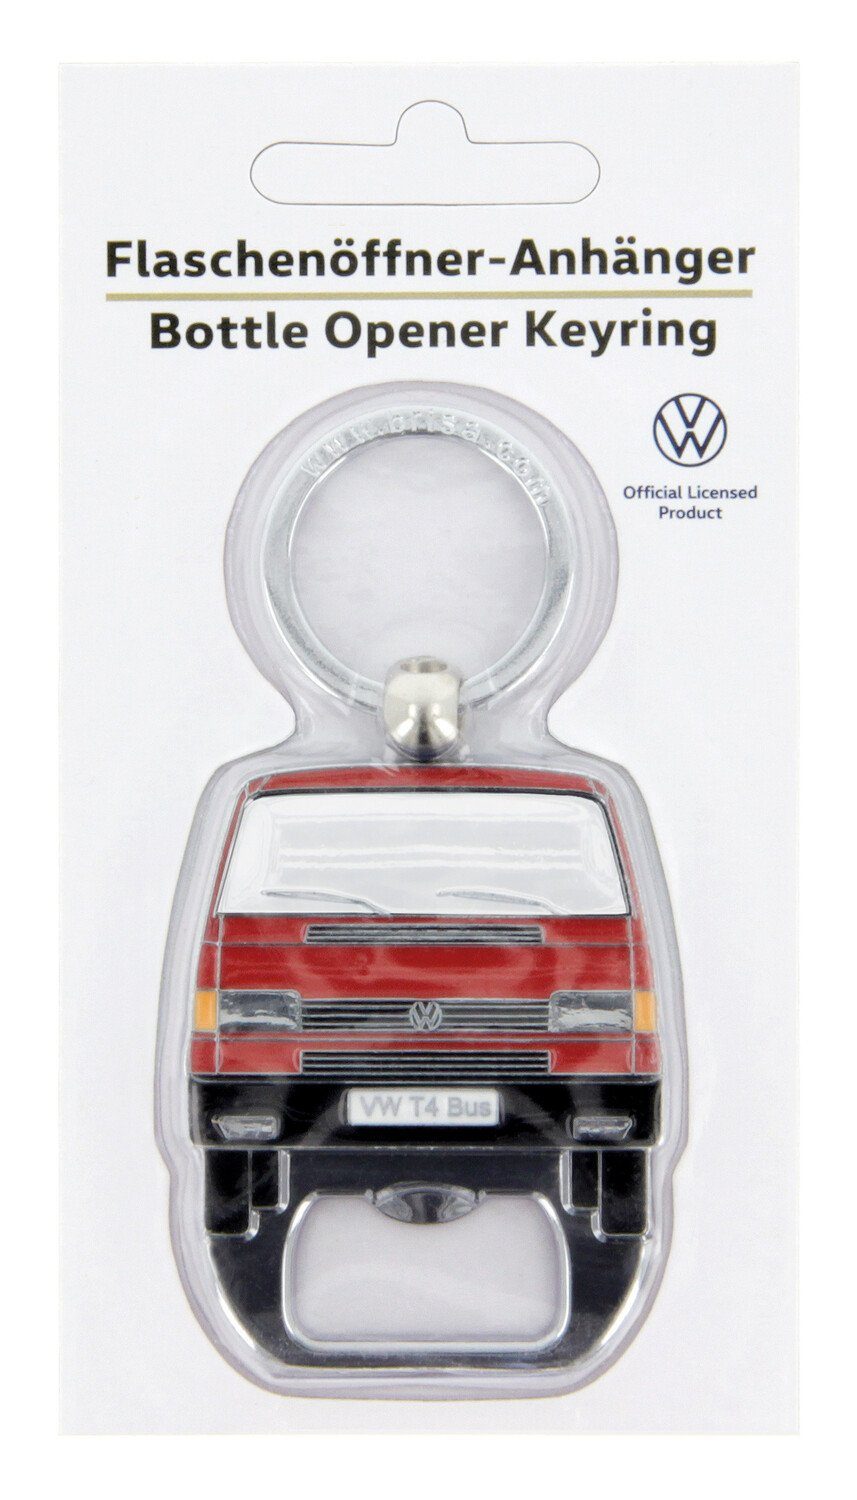 Flaschenöffner Collection im Bus BRISA Flaschenöffner Rot Integrierter Schlüsselanhänger Design, mit Schlüsselring VW Bulli Volkswagen T4 by